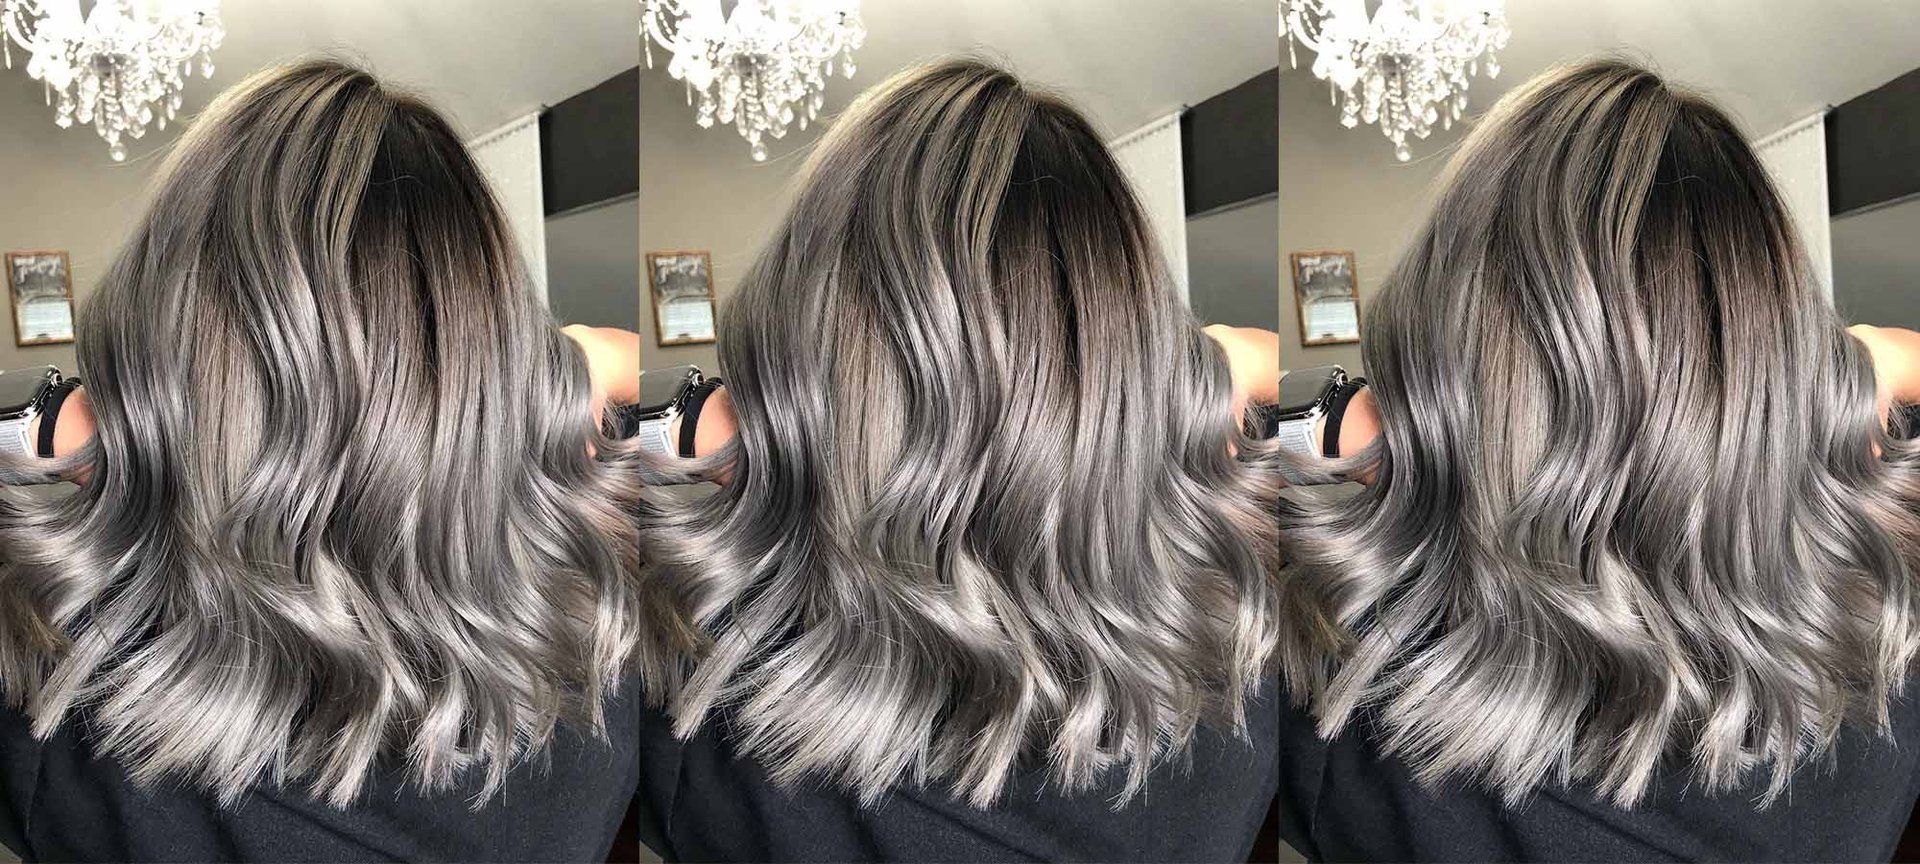 Shades Of Gray Hair Color